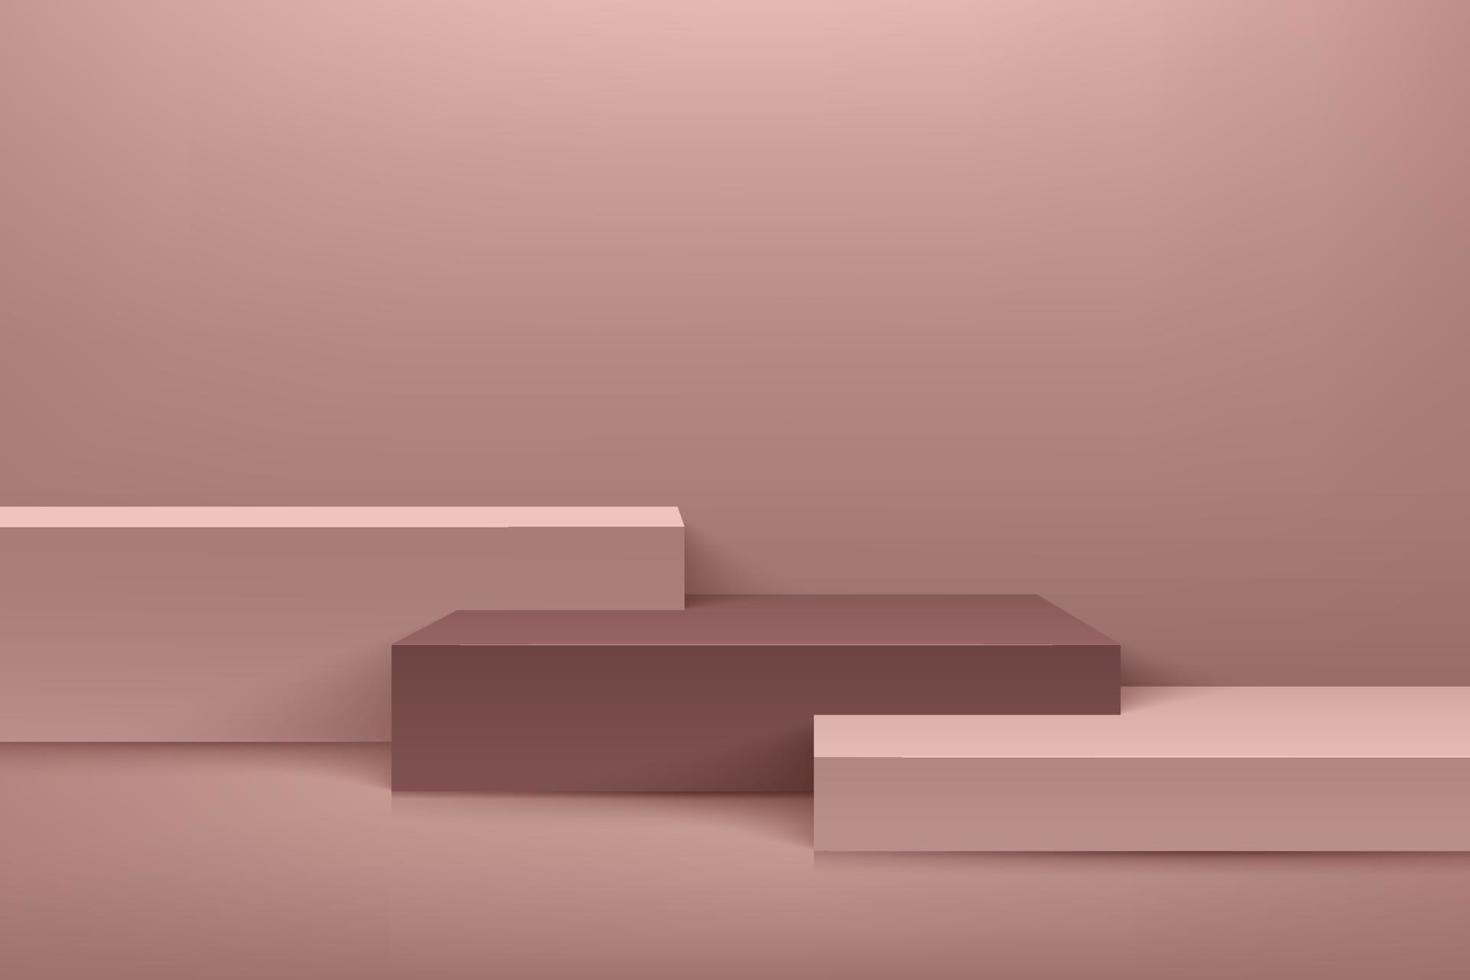 affichage de cube rose abstrait pour produit sur site Web dans moderne. rendu de fond de luxe avec podium et scène de mur de texture minimal en or rose, forme géométrique de rendu 3D. illustration vectorielle vecteur